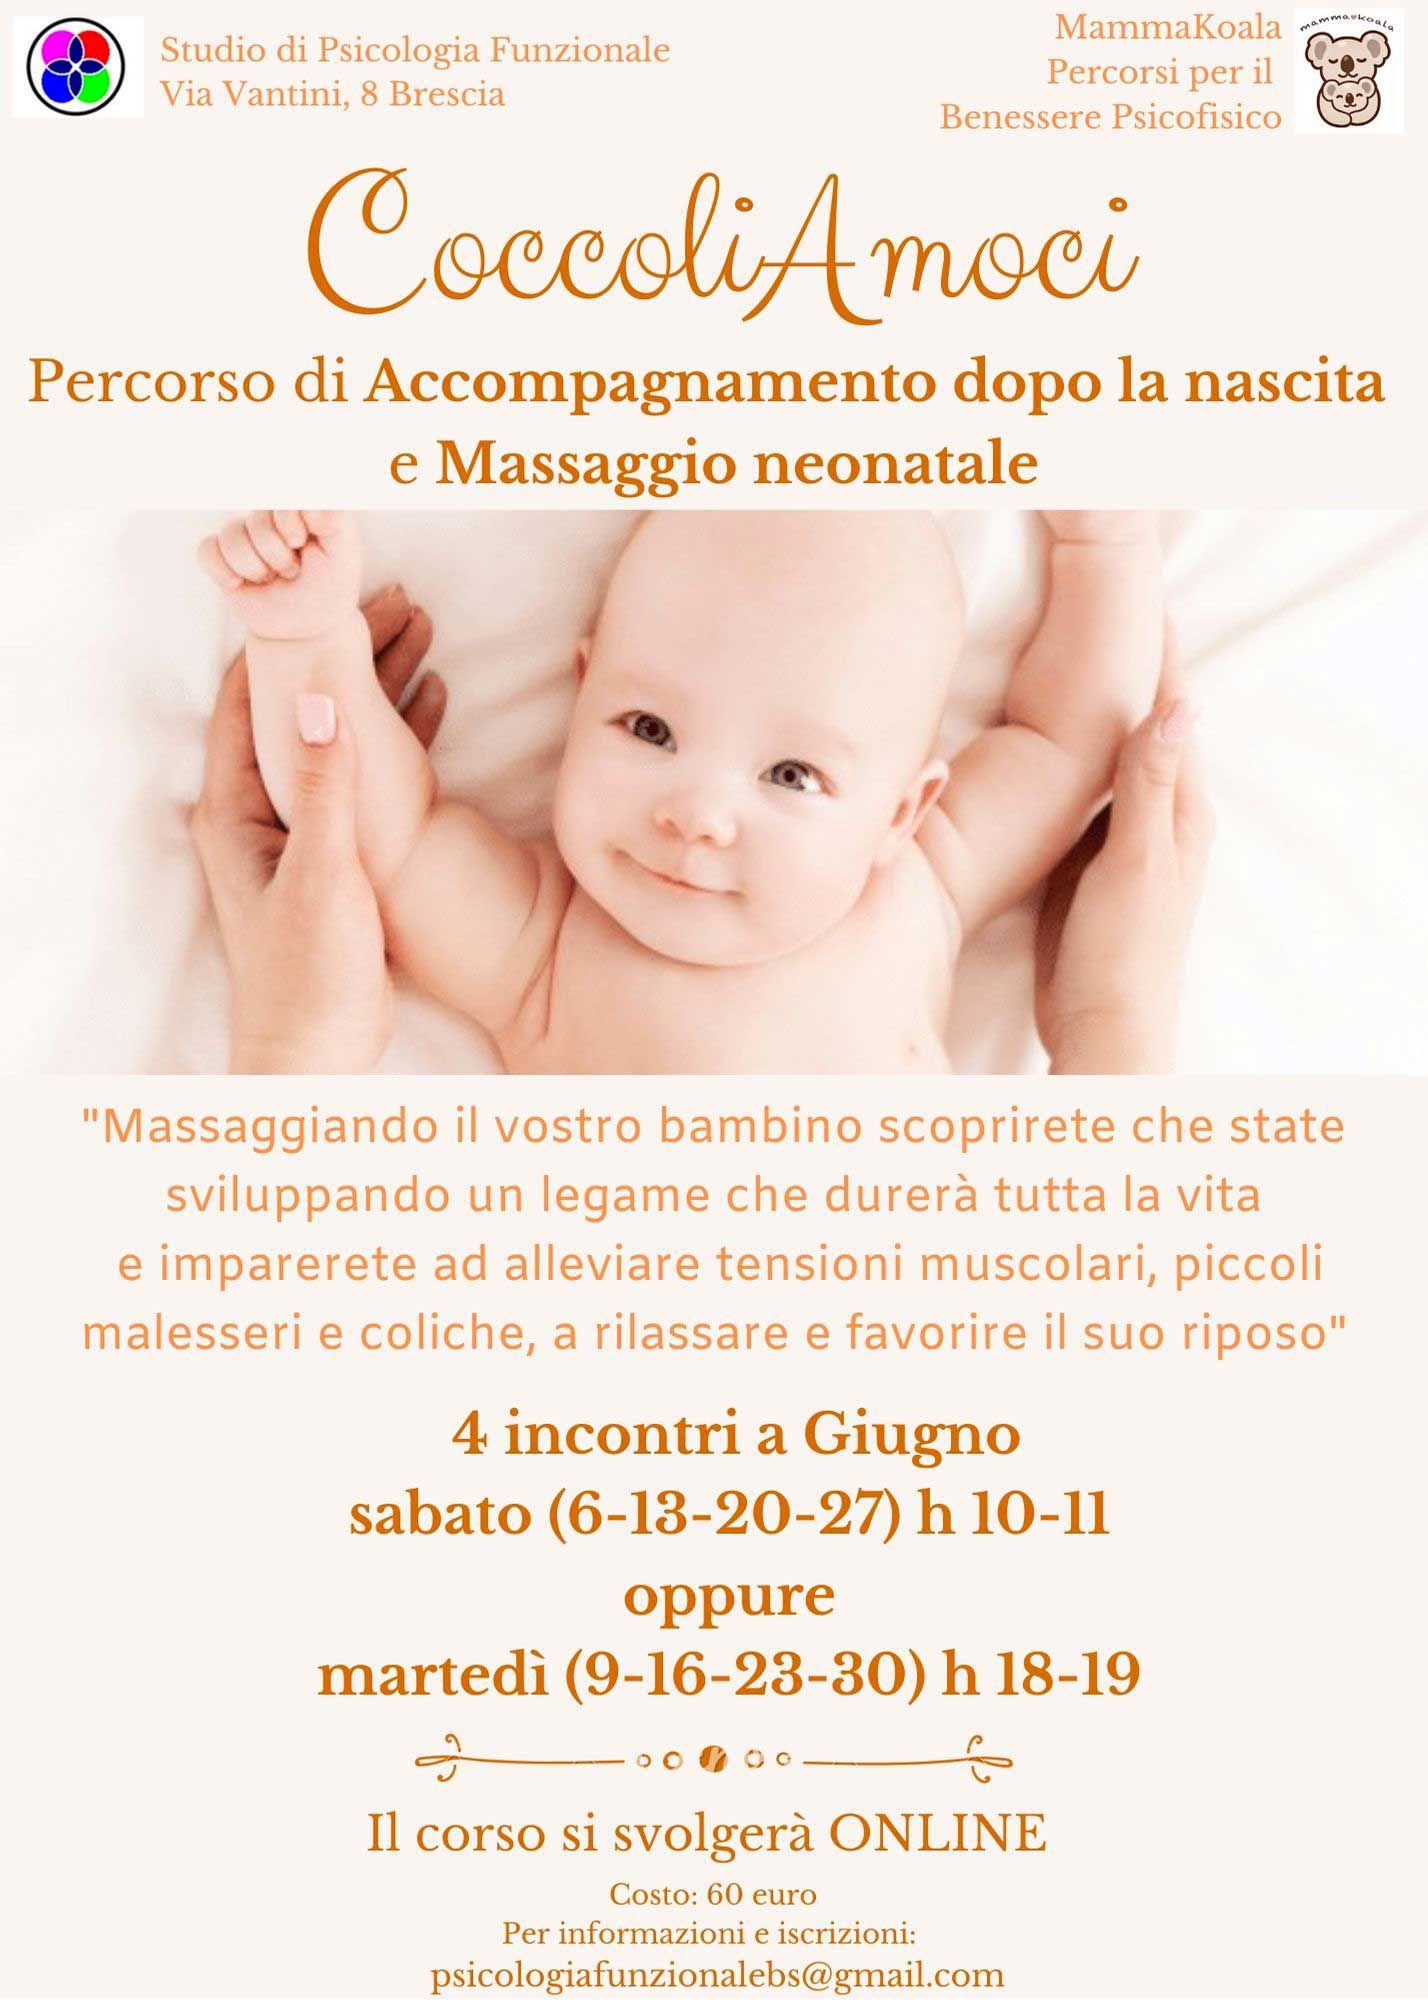 massaggio-neonatale-mammakoala-coccoliamoci